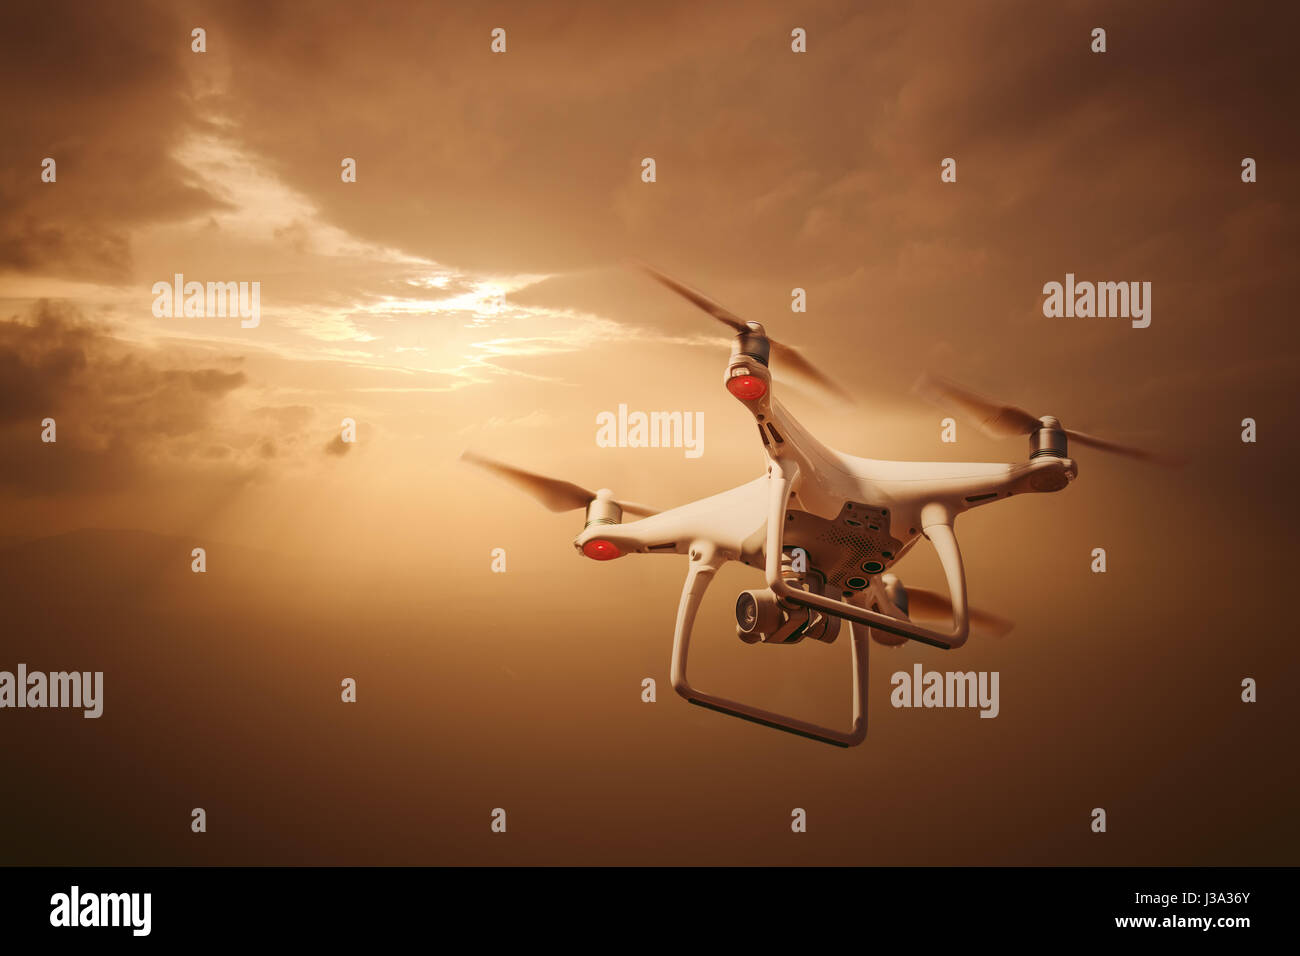 Pilotage de drones au coucher du soleil Banque D'Images